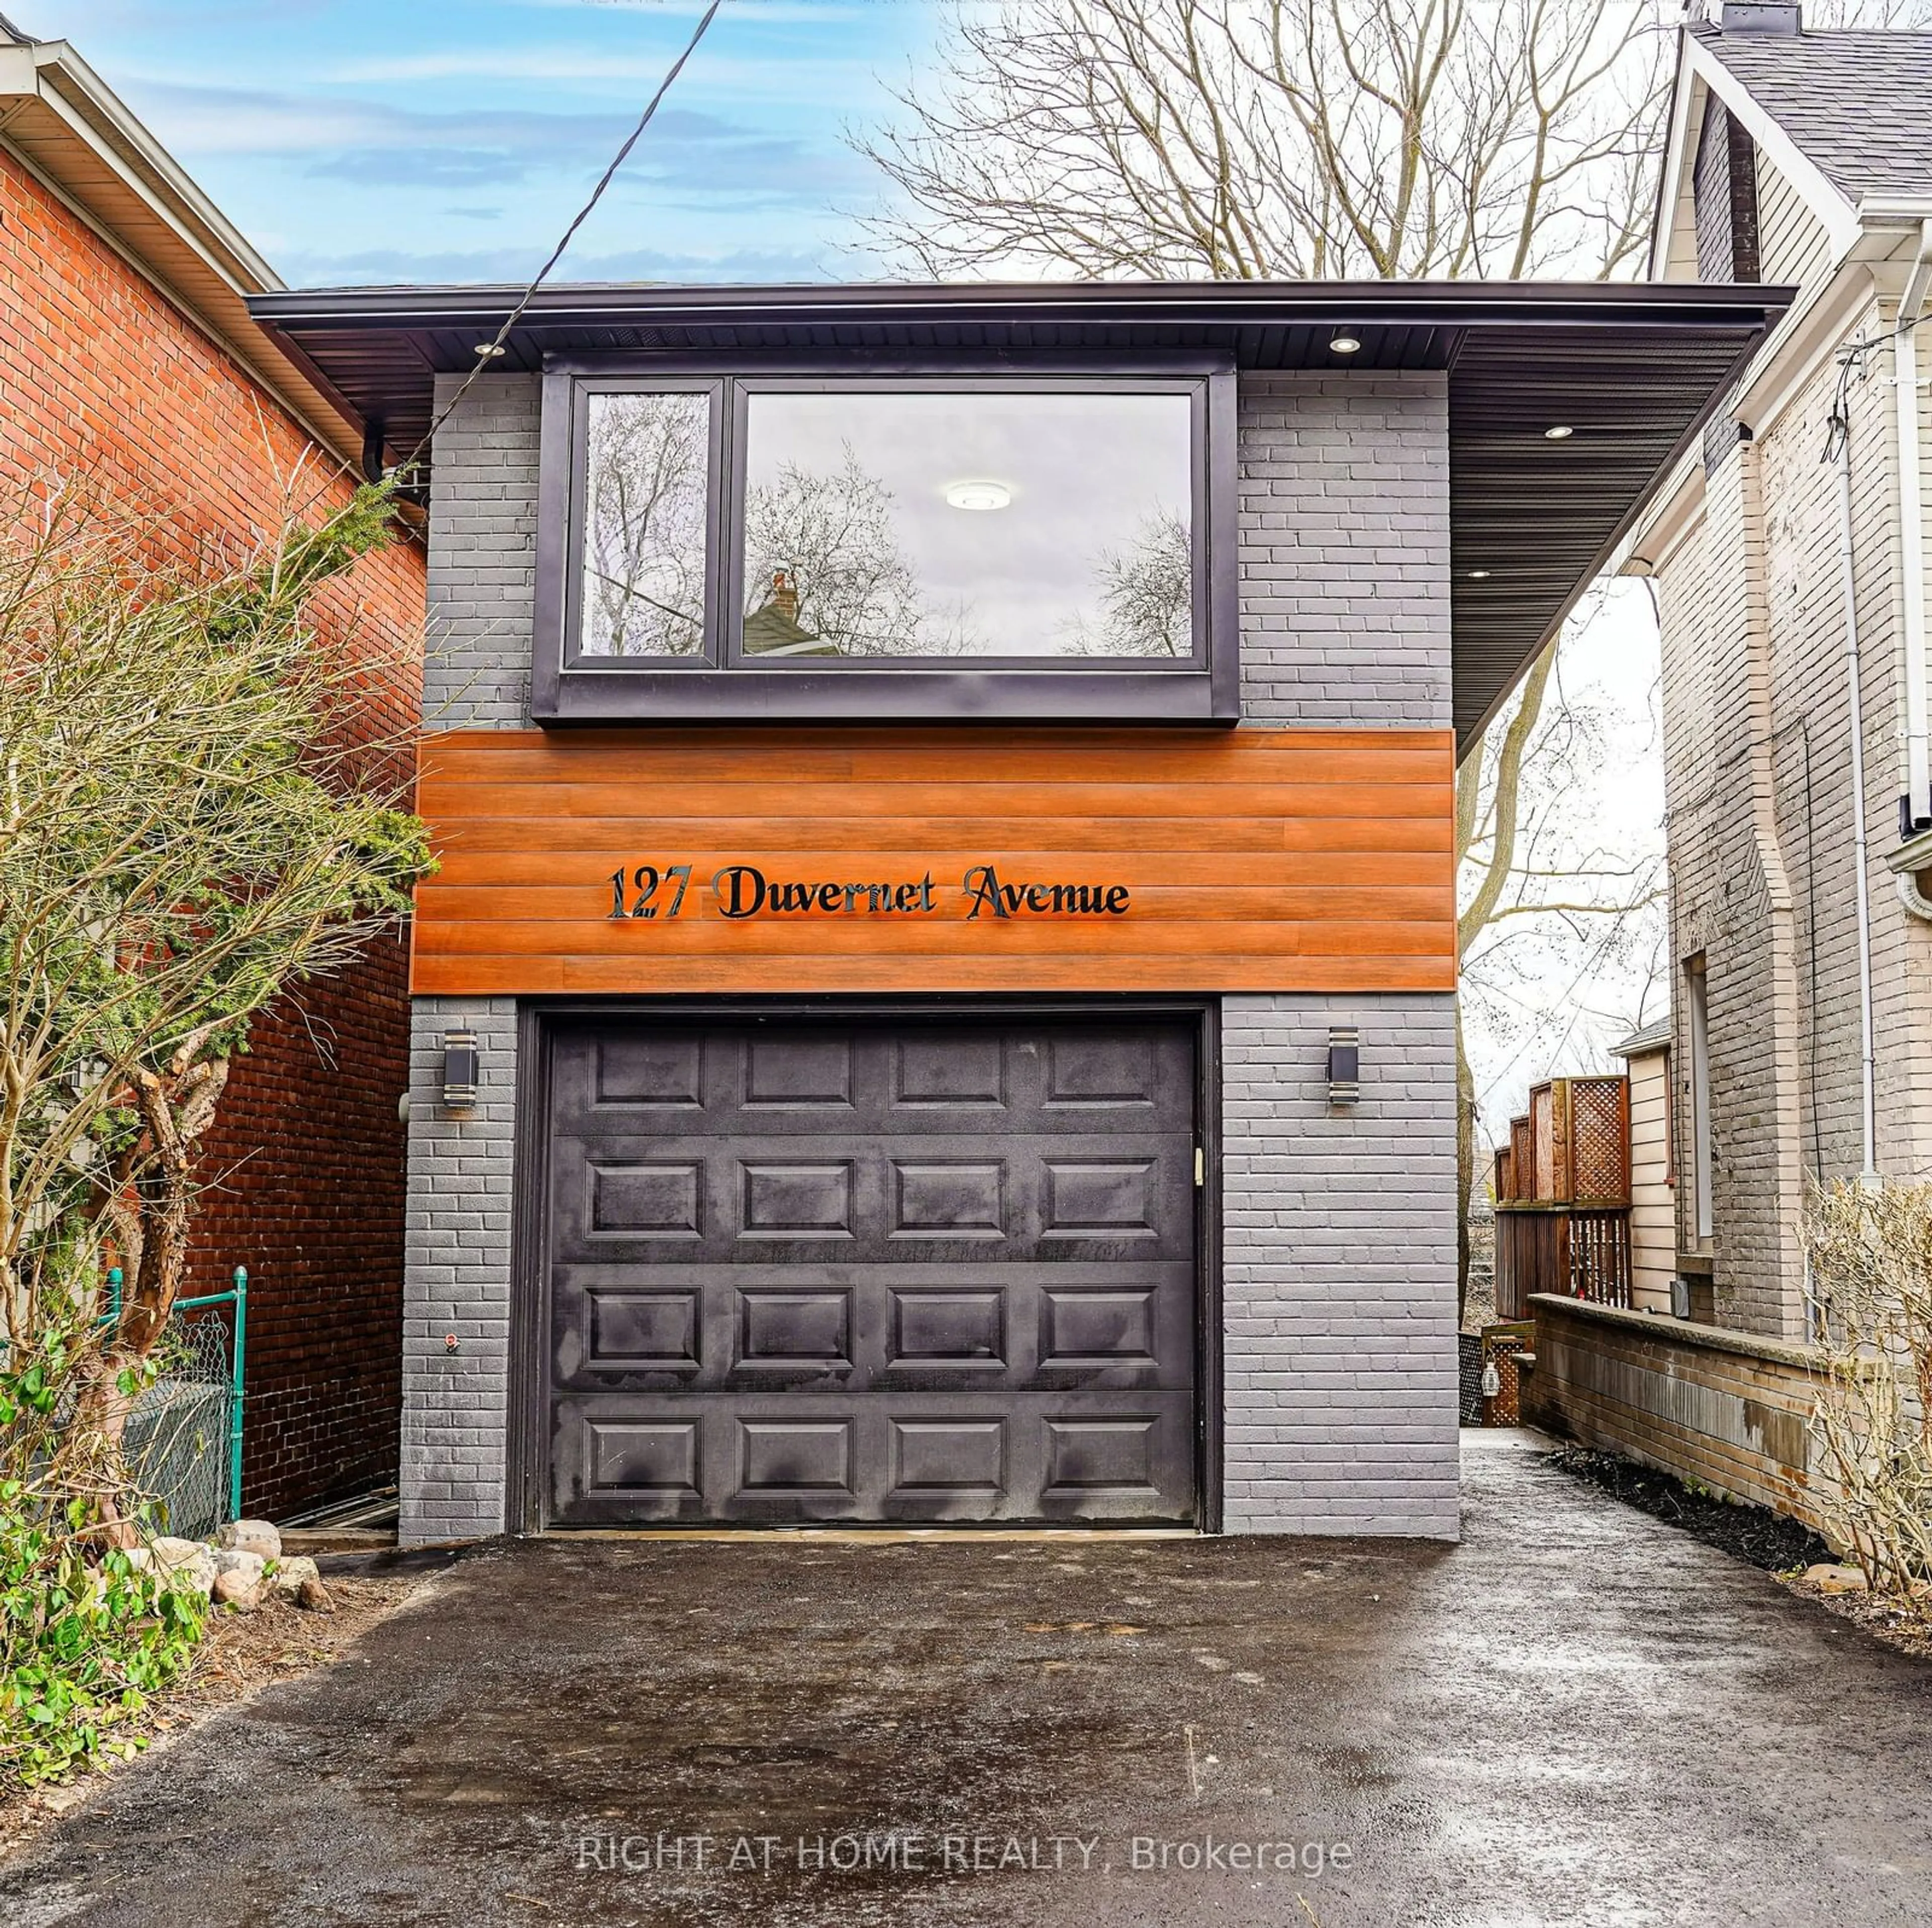 Home with brick exterior material for 127 Duvernet Ave, Toronto Ontario M4E 1V5